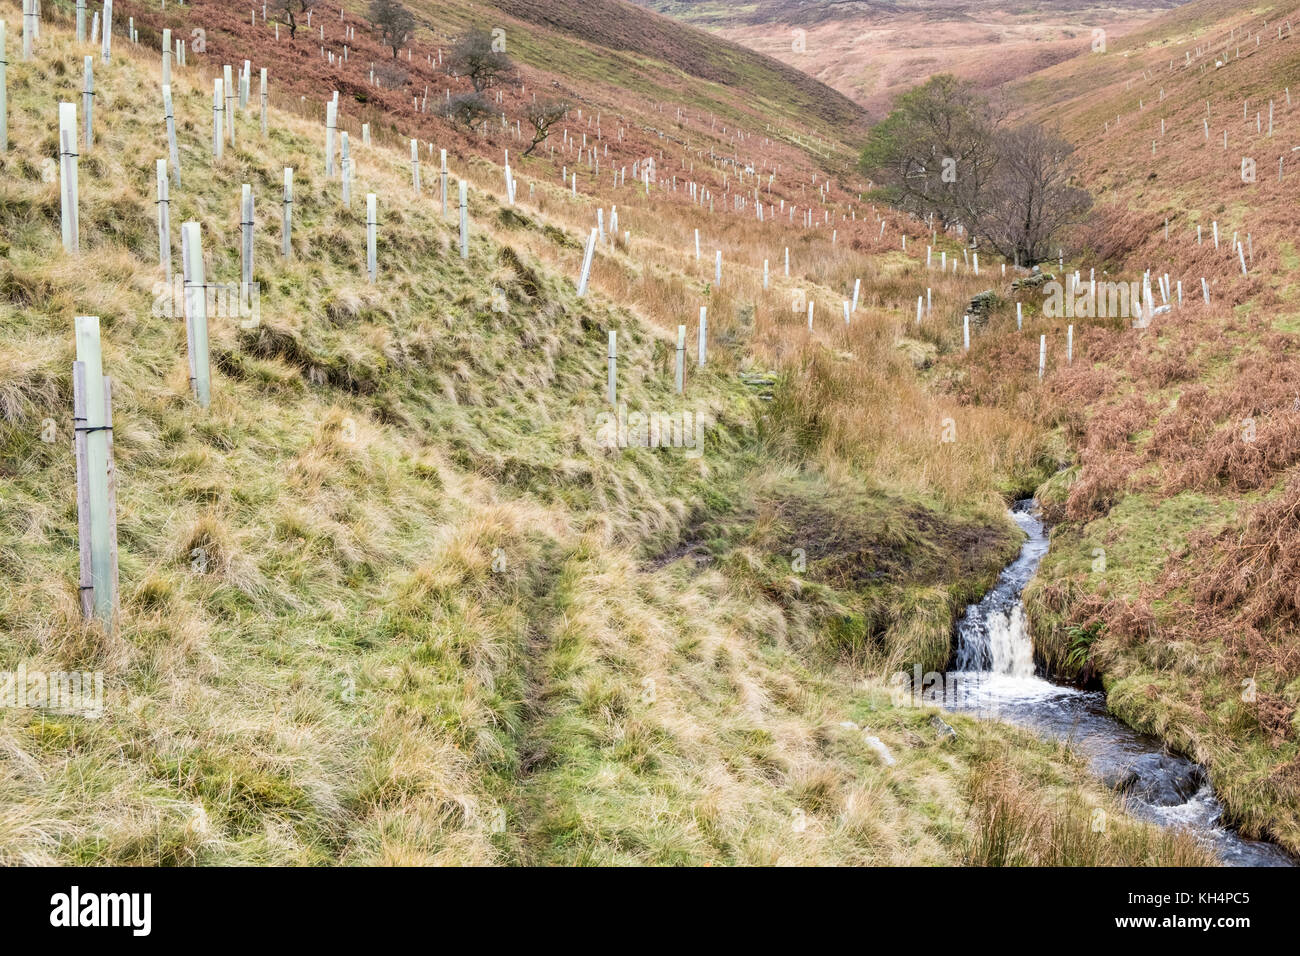 Appena piantato alberi con elementi di protezione per alberi o ripari di protezione su di una collina a Jaggers Clough, Derbyshire, Peak District, REGNO UNITO Foto Stock